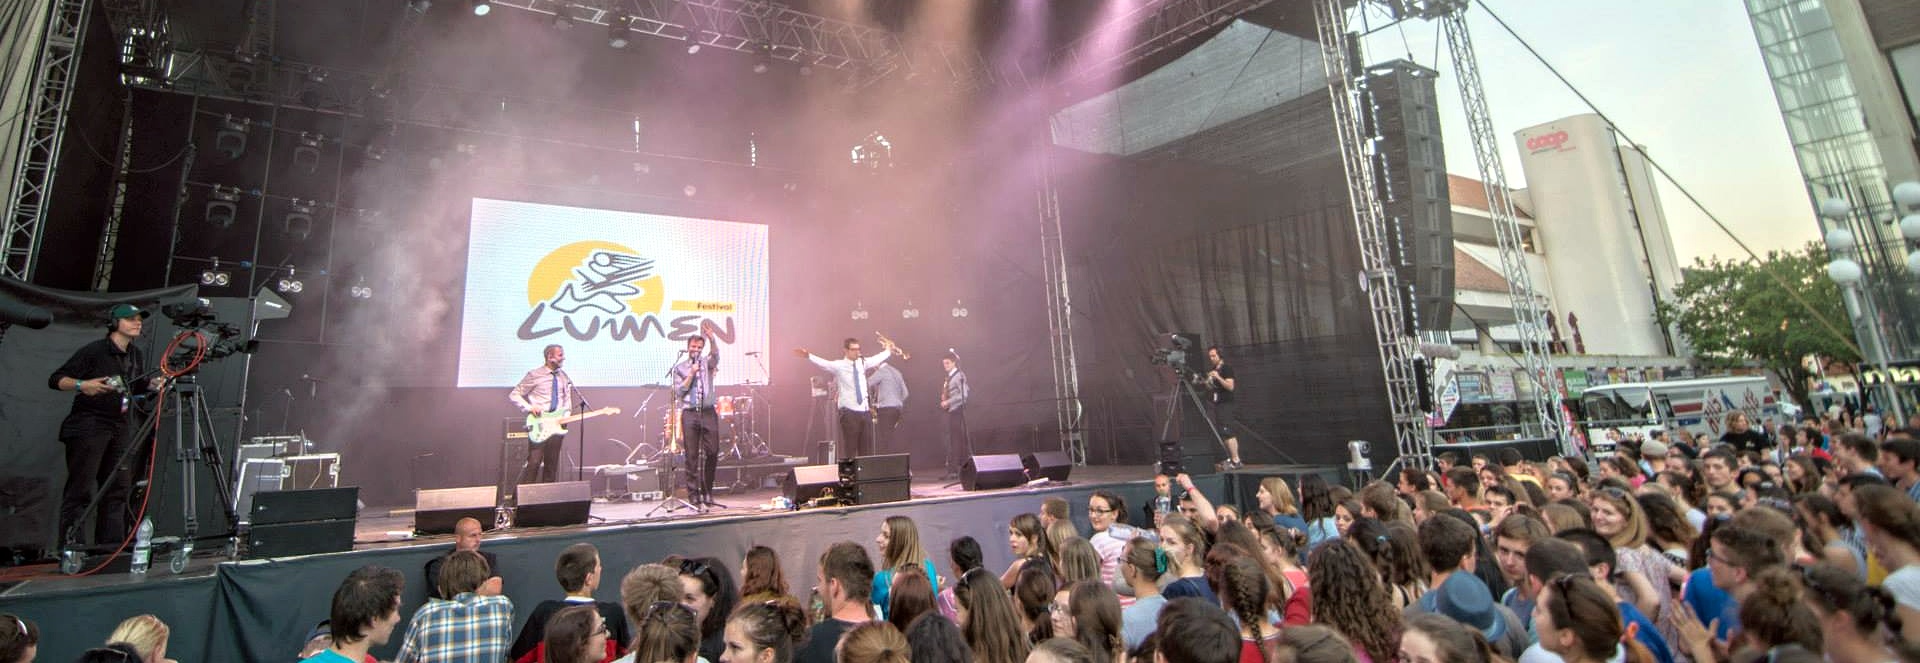 Festival Lumen Trnava 2017 - 24. ronk